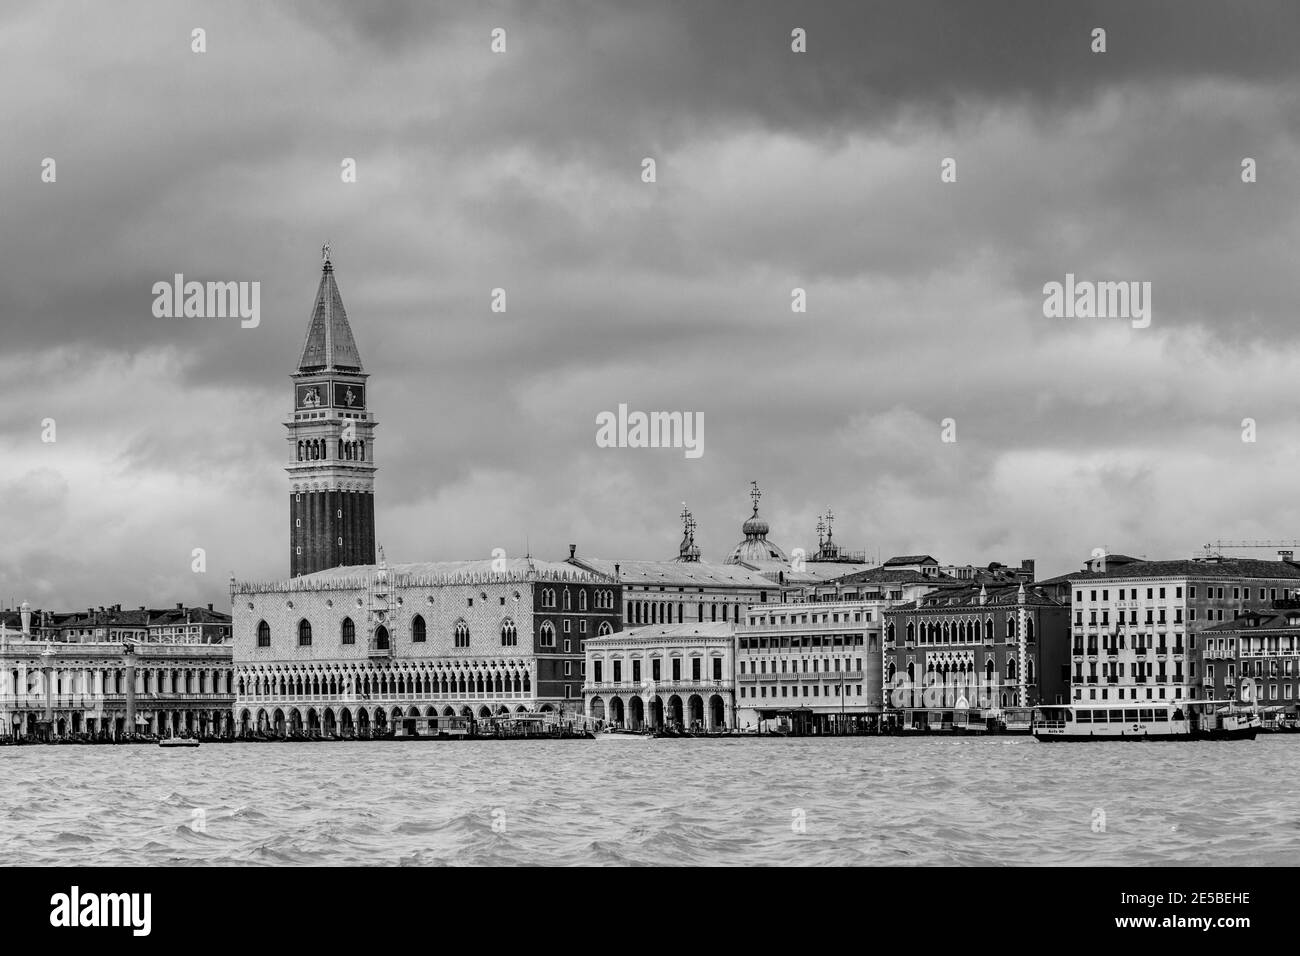 Vue sur les bâtiments historiques du front de mer, Venise, Italie. Banque D'Images